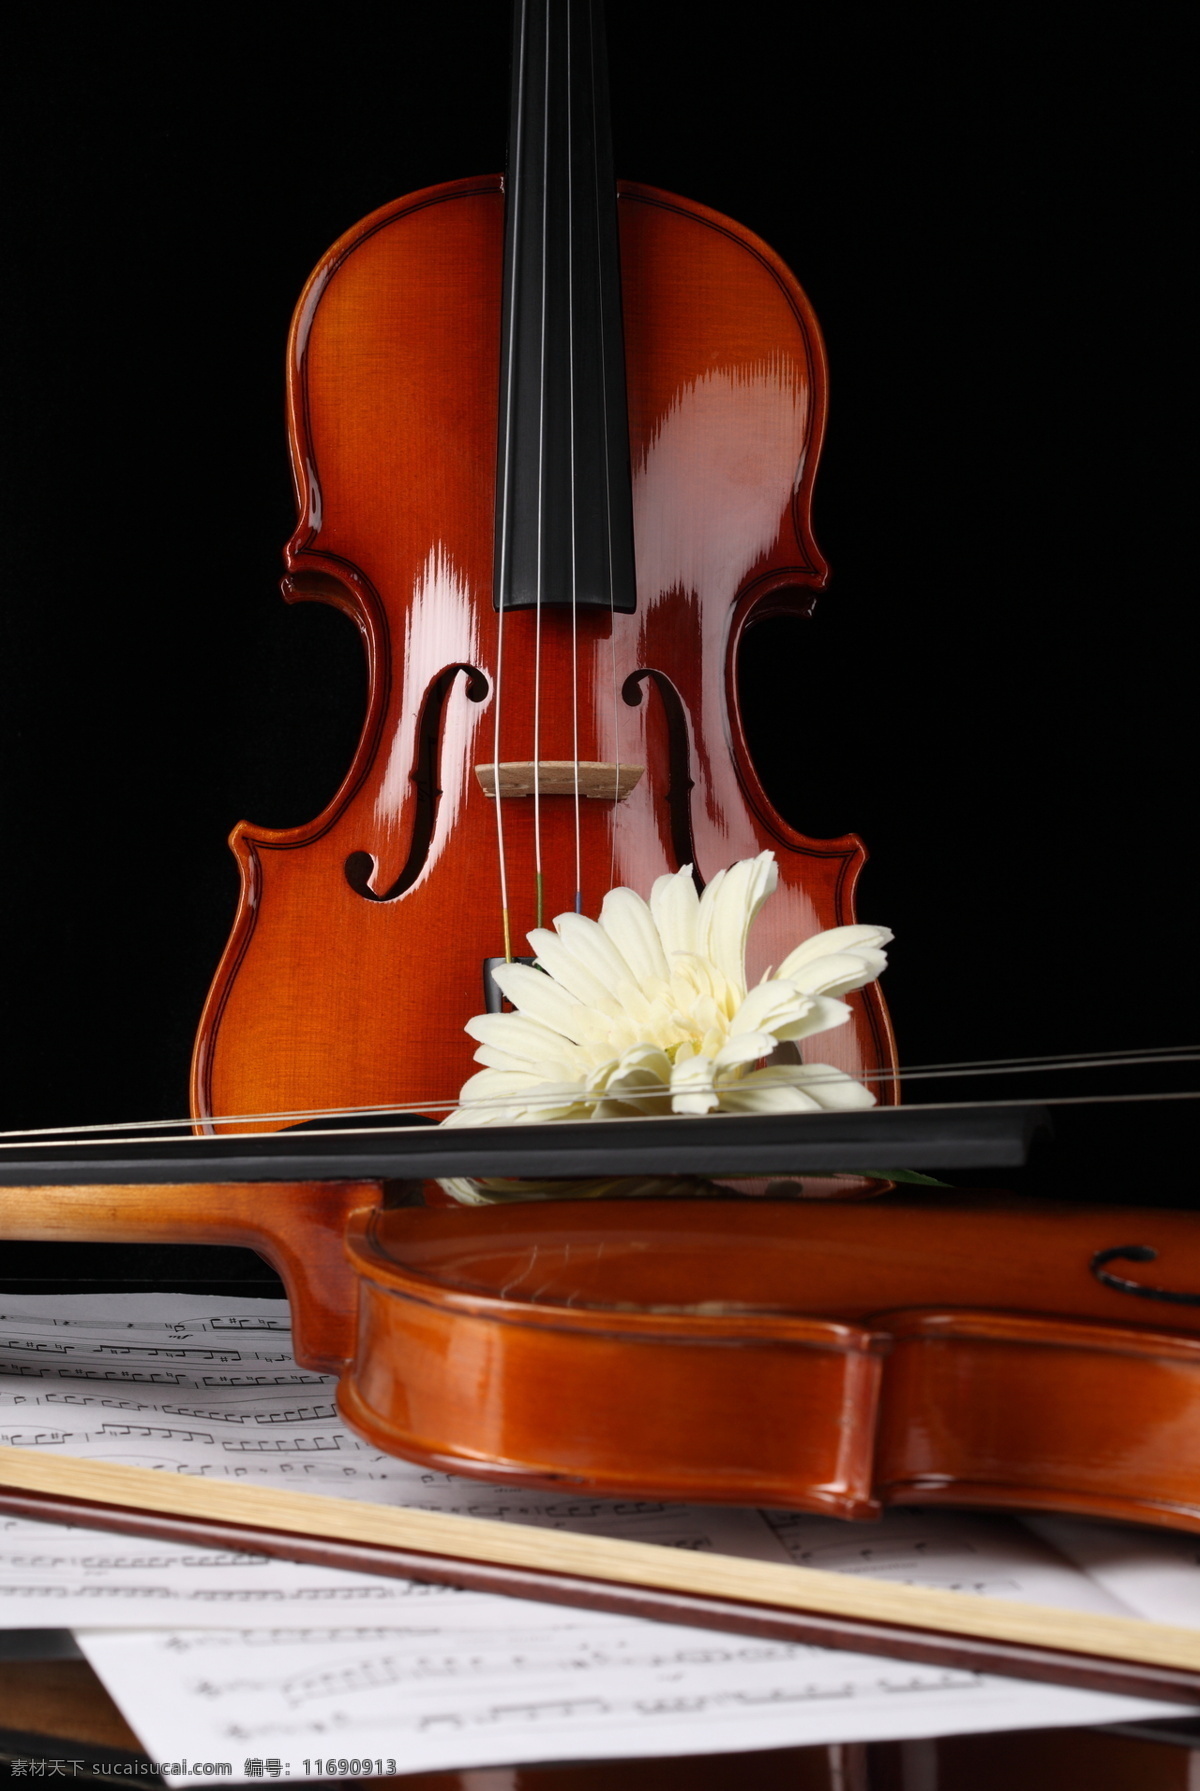 小提琴与鲜花 小提琴 乐谱 音符 中提琴 文化艺术 音乐 花 鲜花 影音娱乐 生活百科 黑色